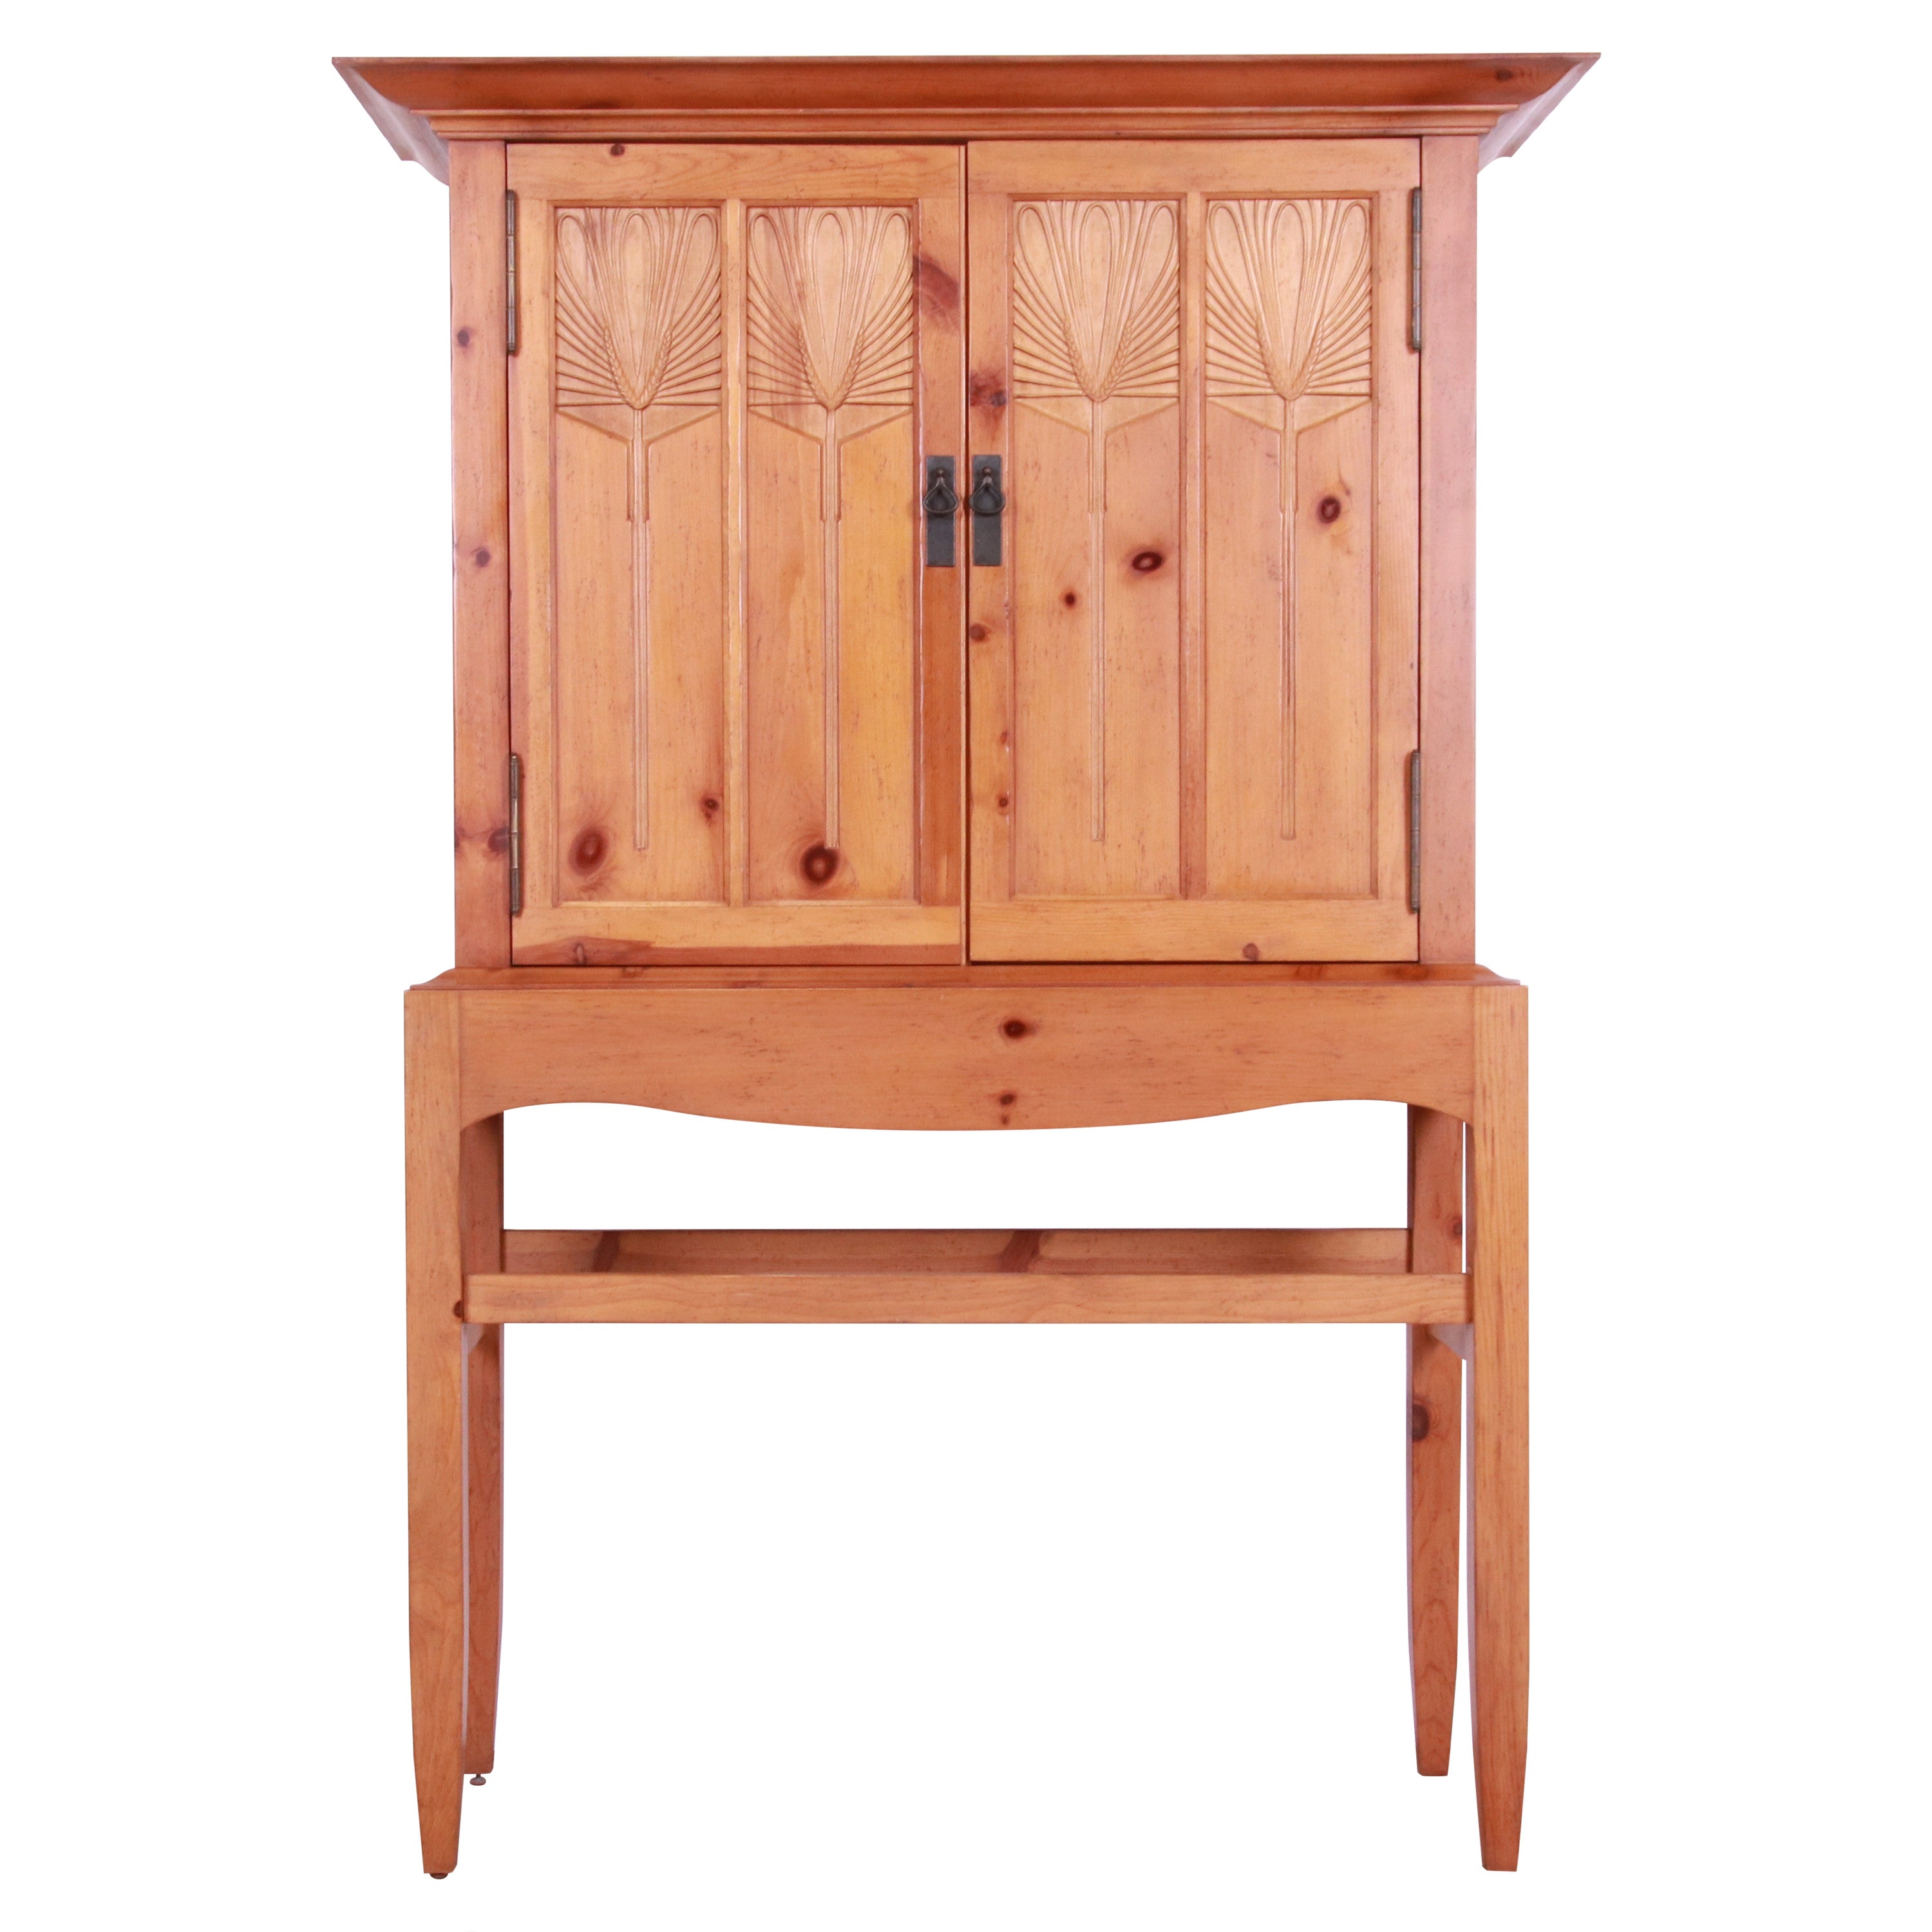 Baker Furniture Milling Road Shaker Style Carved Pine Linen Press or Bar Cabinet